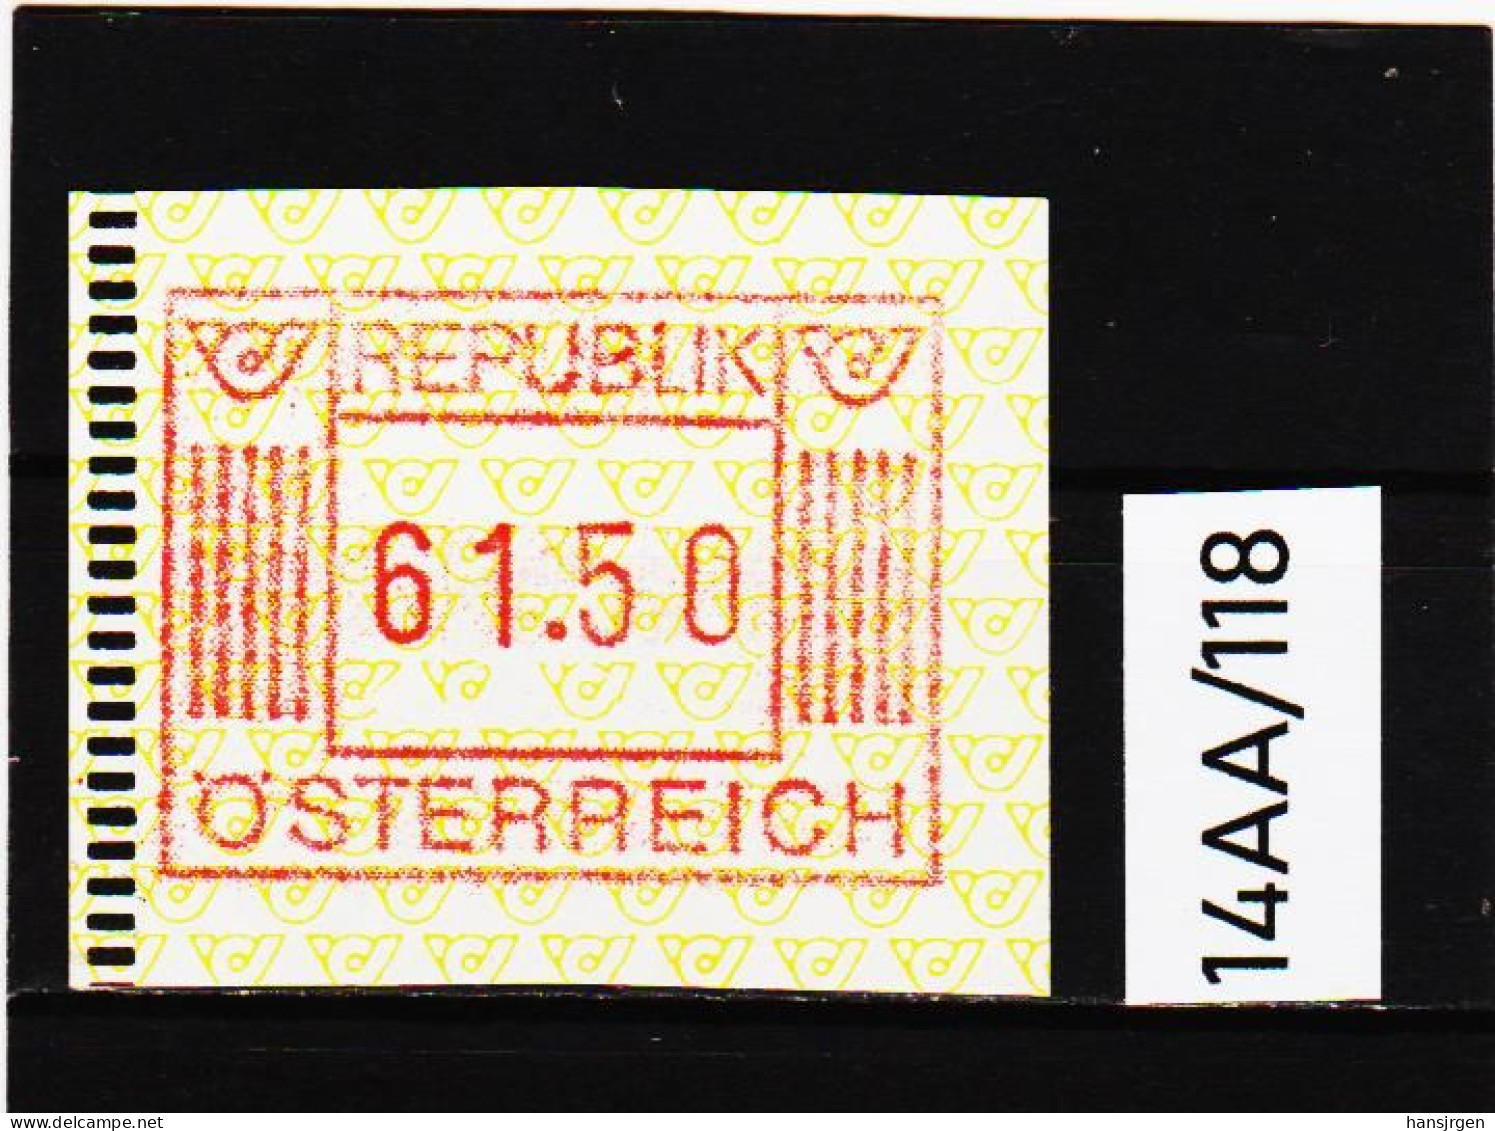 14AA/118  ÖSTERREICH 1983 AUTOMATENMARKEN  A N K  1. AUSGABE  61,50 SCHILLING   ** Postfrisch - Automatenmarken [ATM]